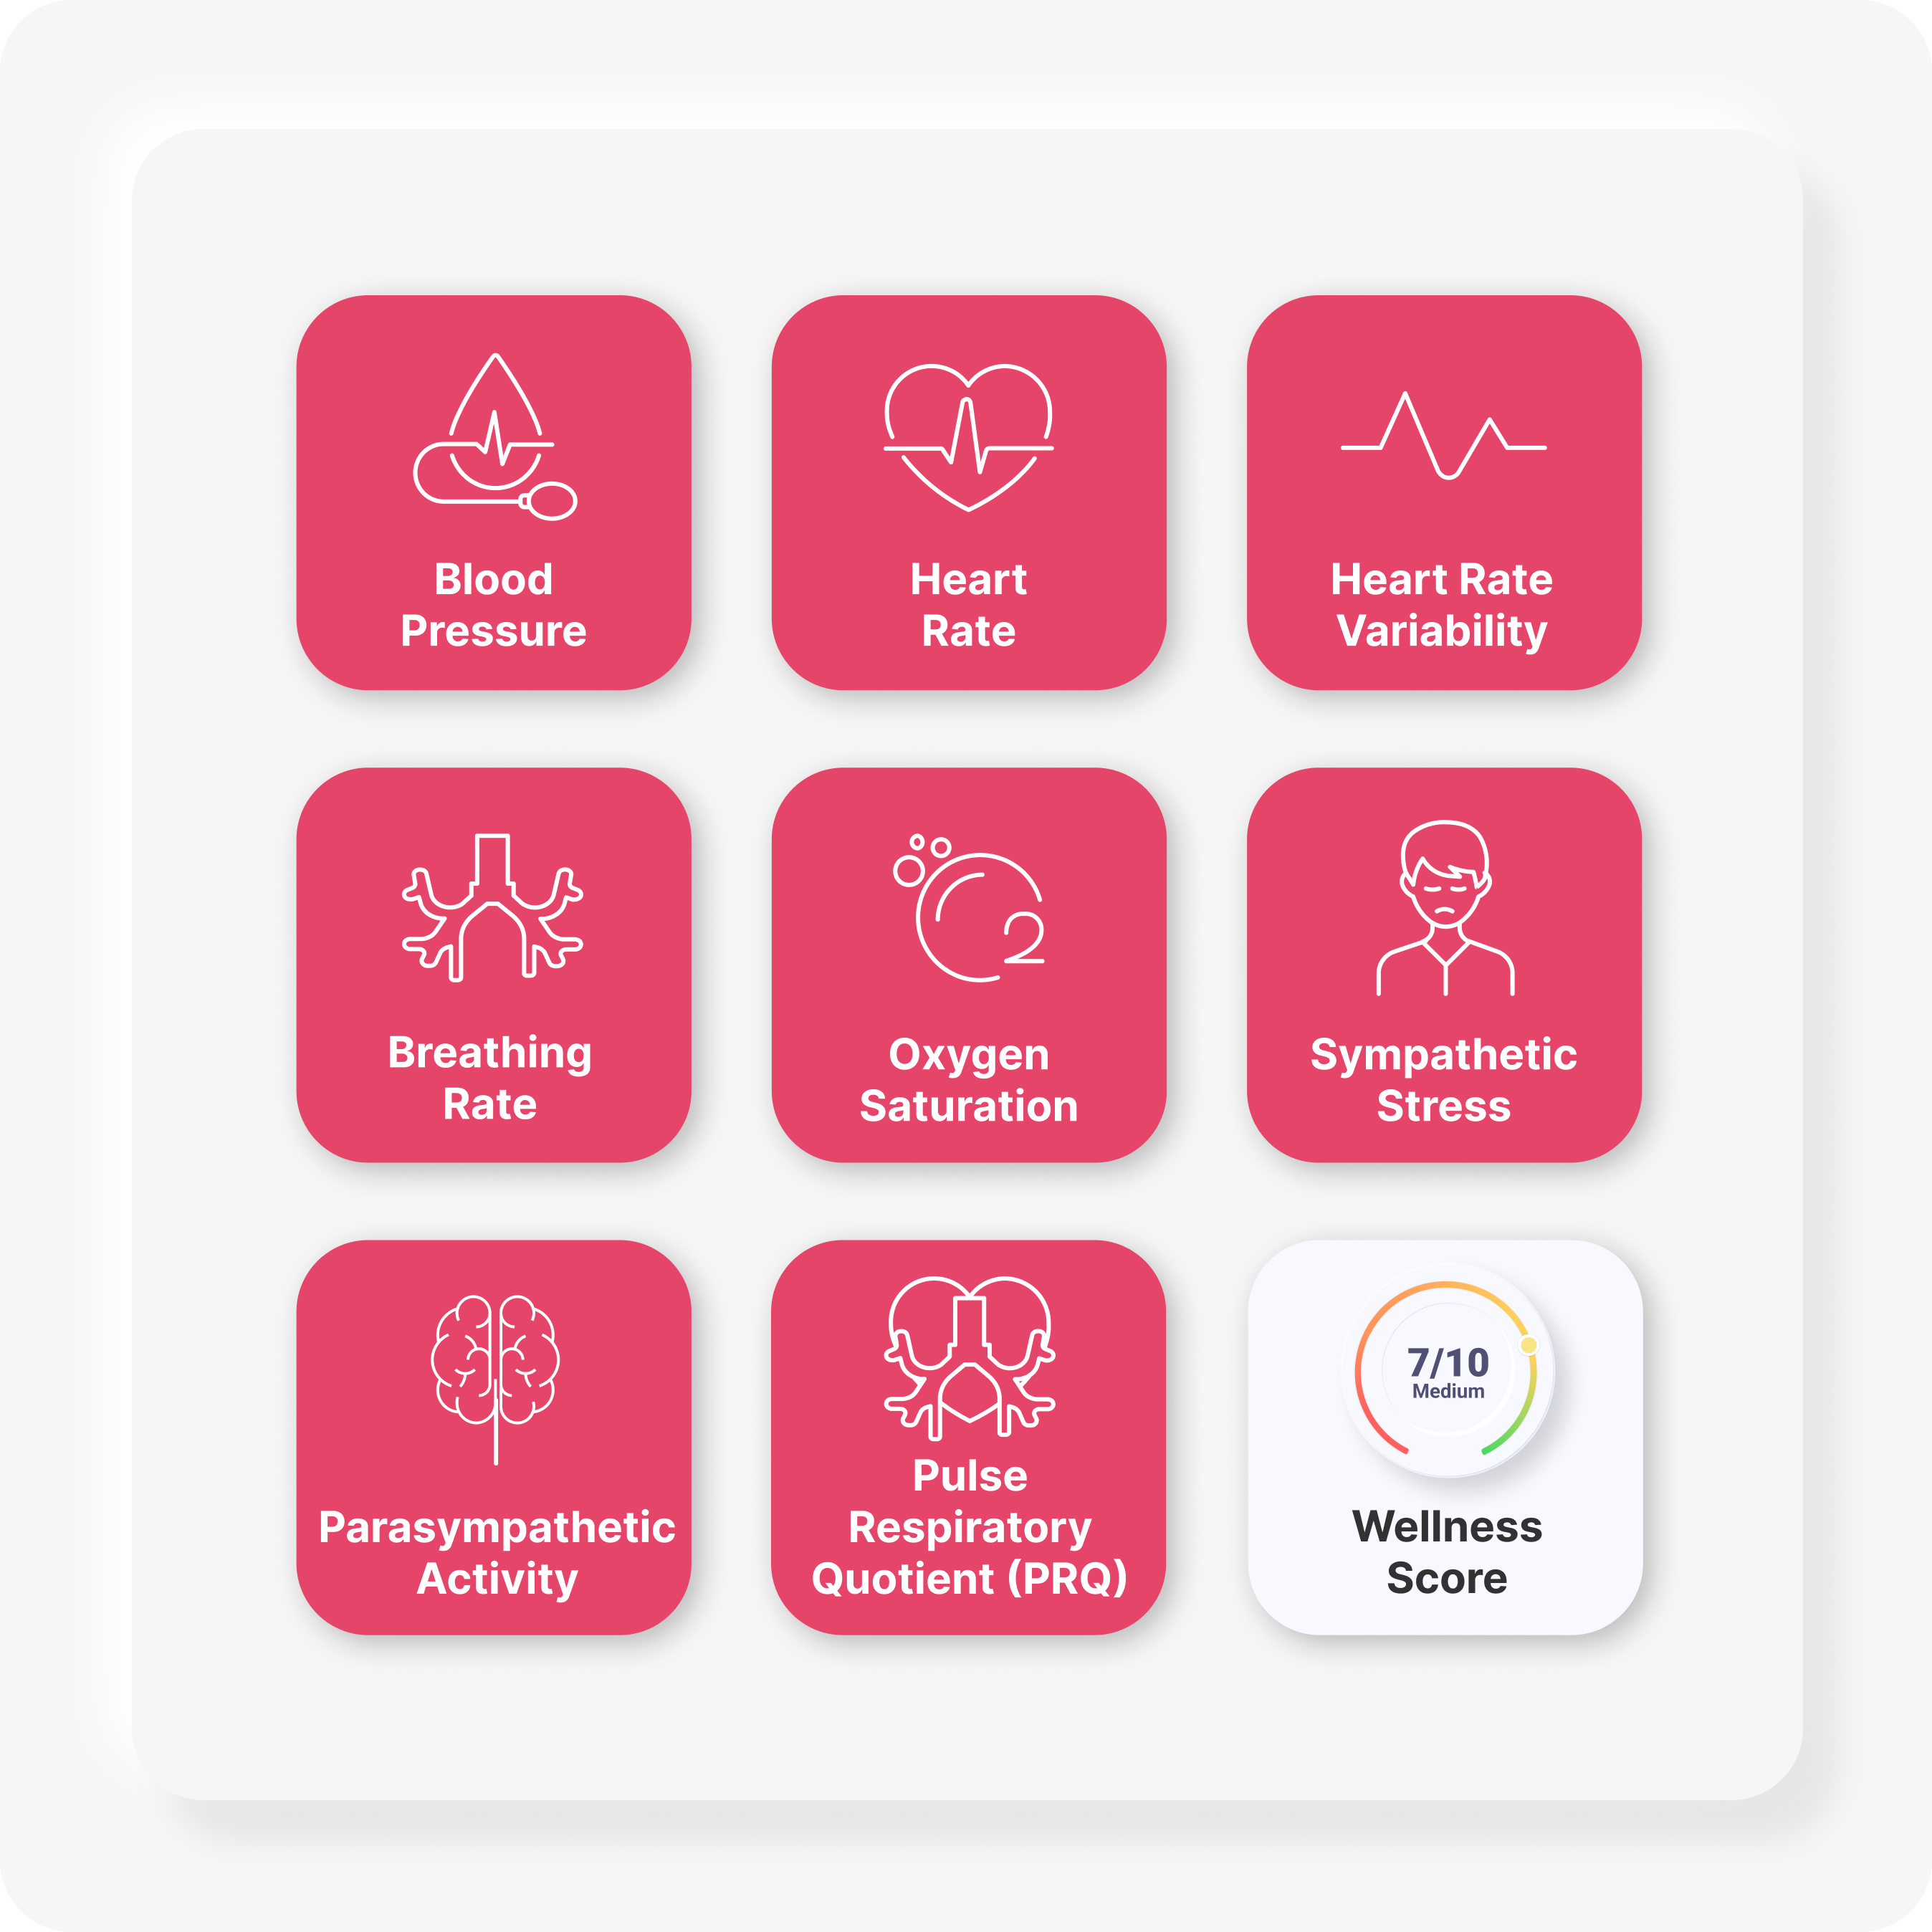 Binah.ai Health Data Platform